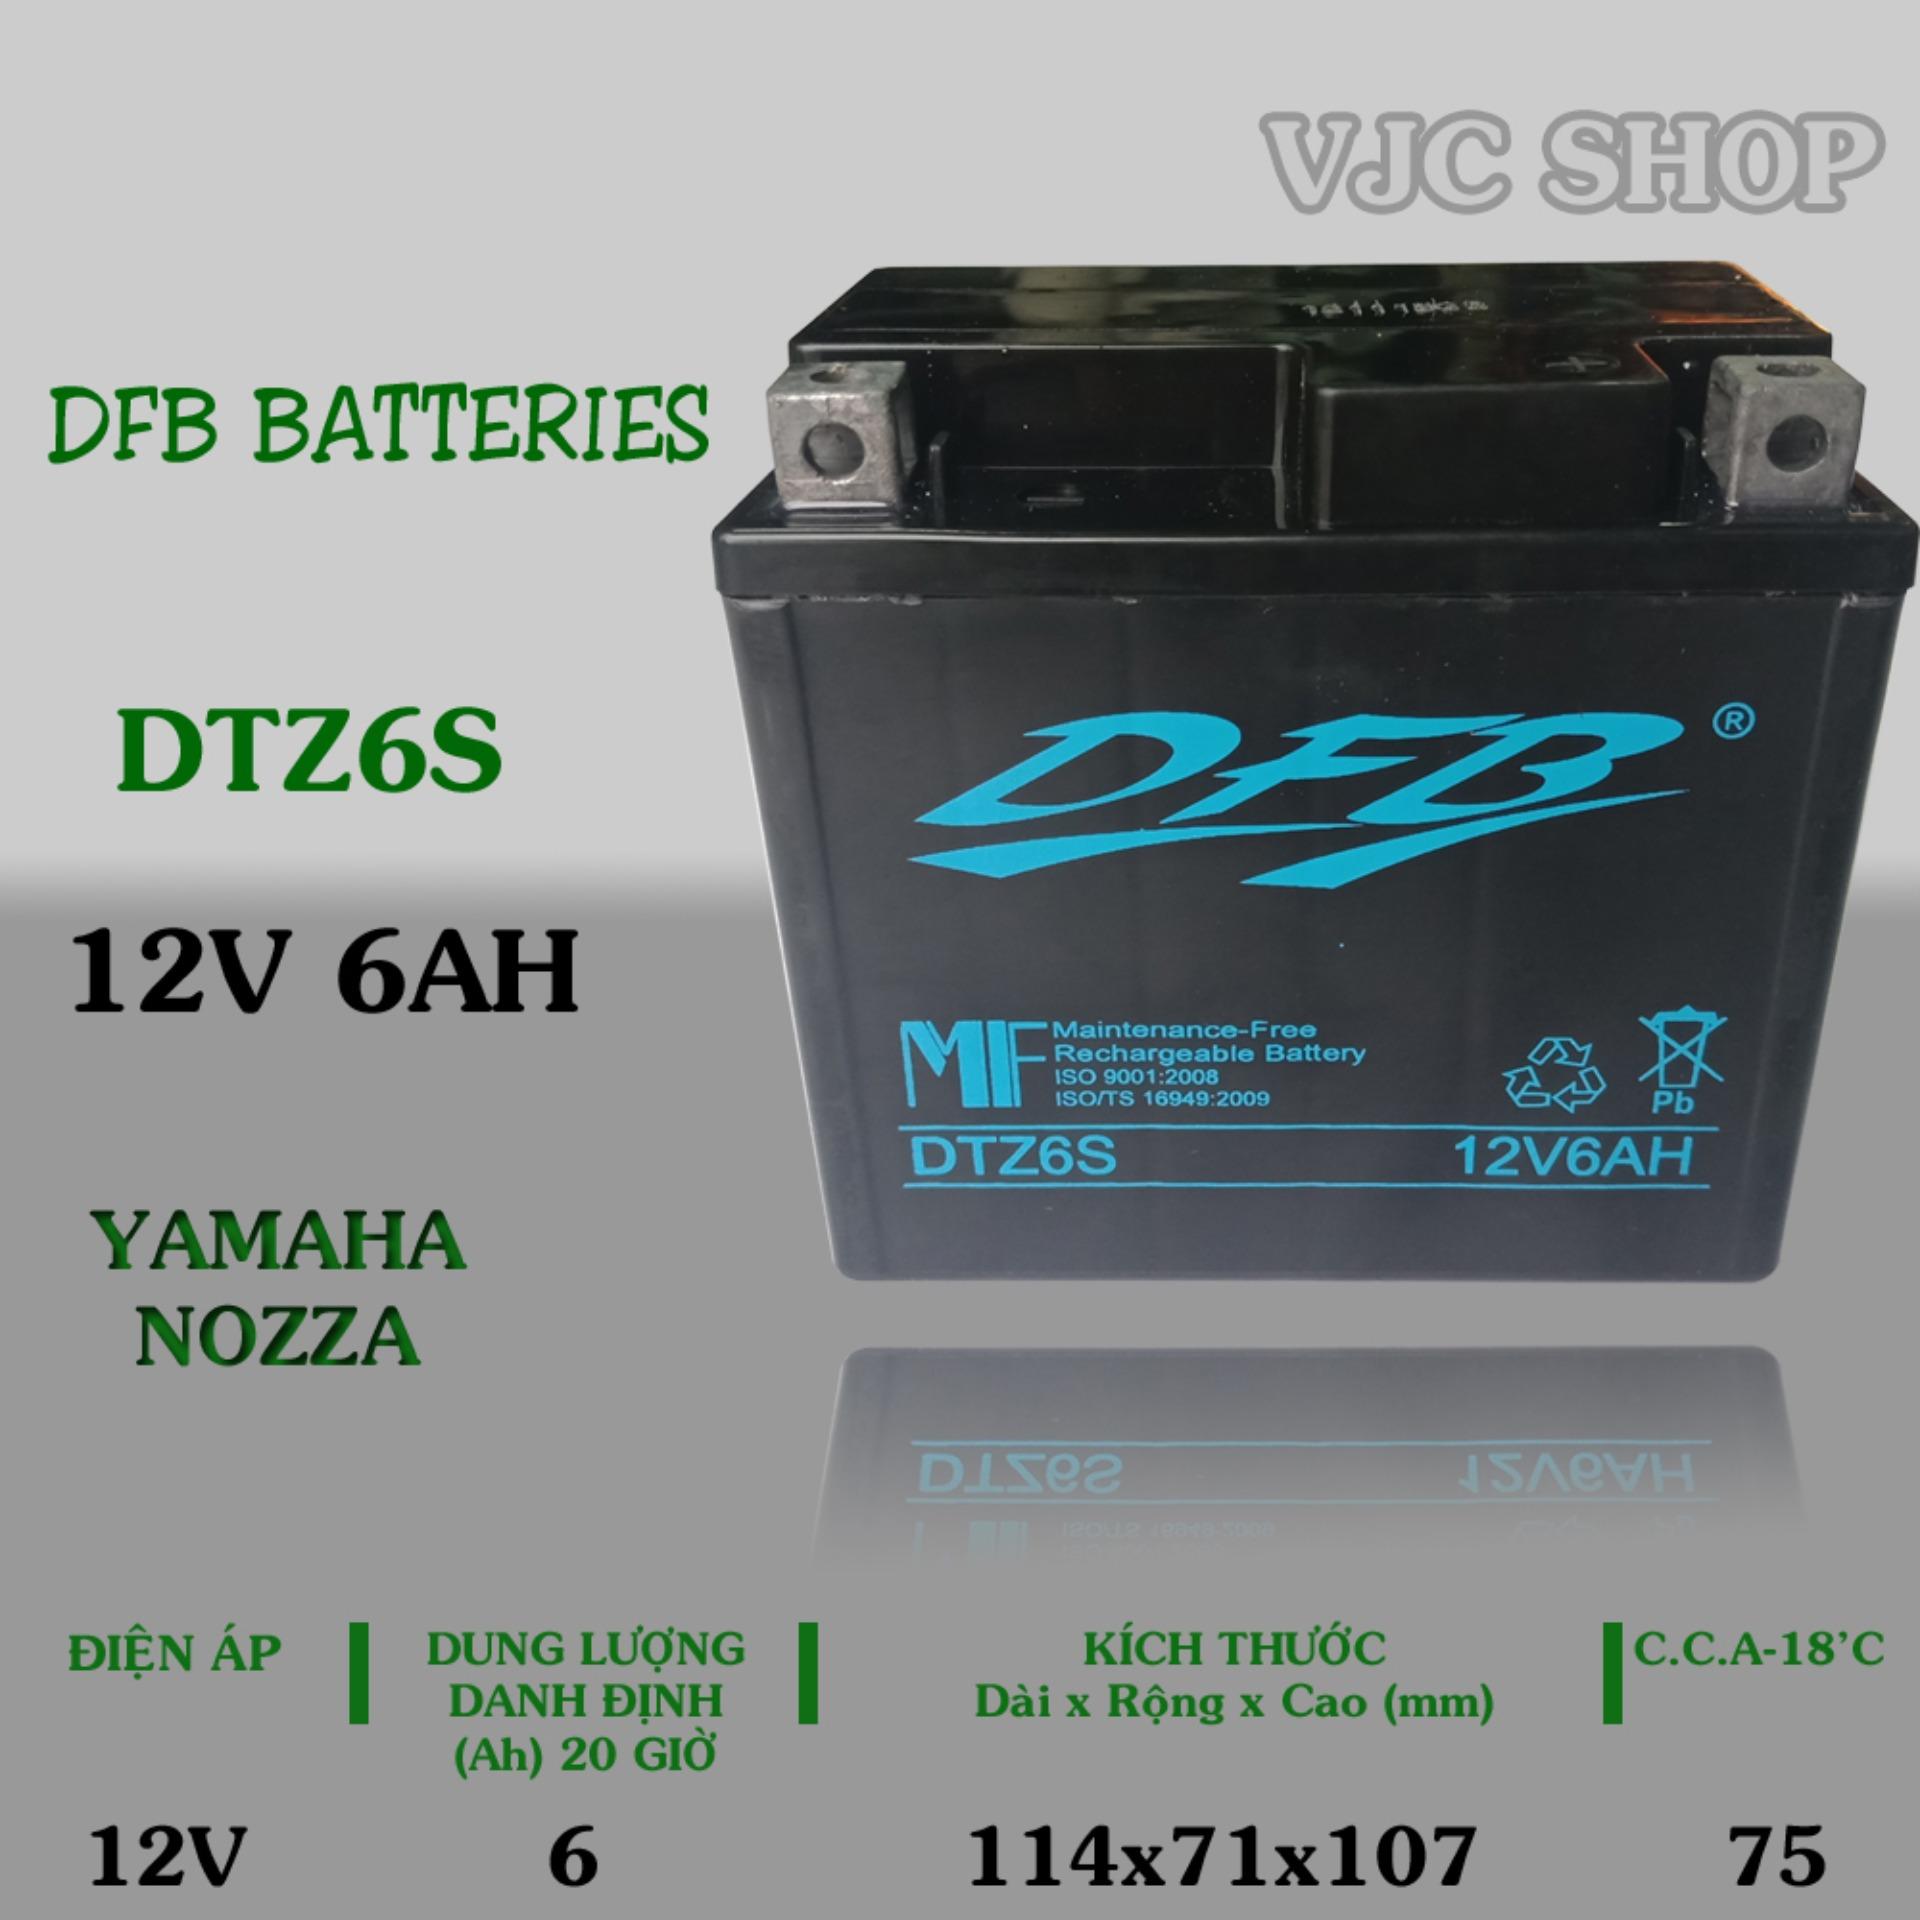 Bình ắc quy xe Yamaha Nozza hãng DFB Batteries dung lượng 12V 6AH